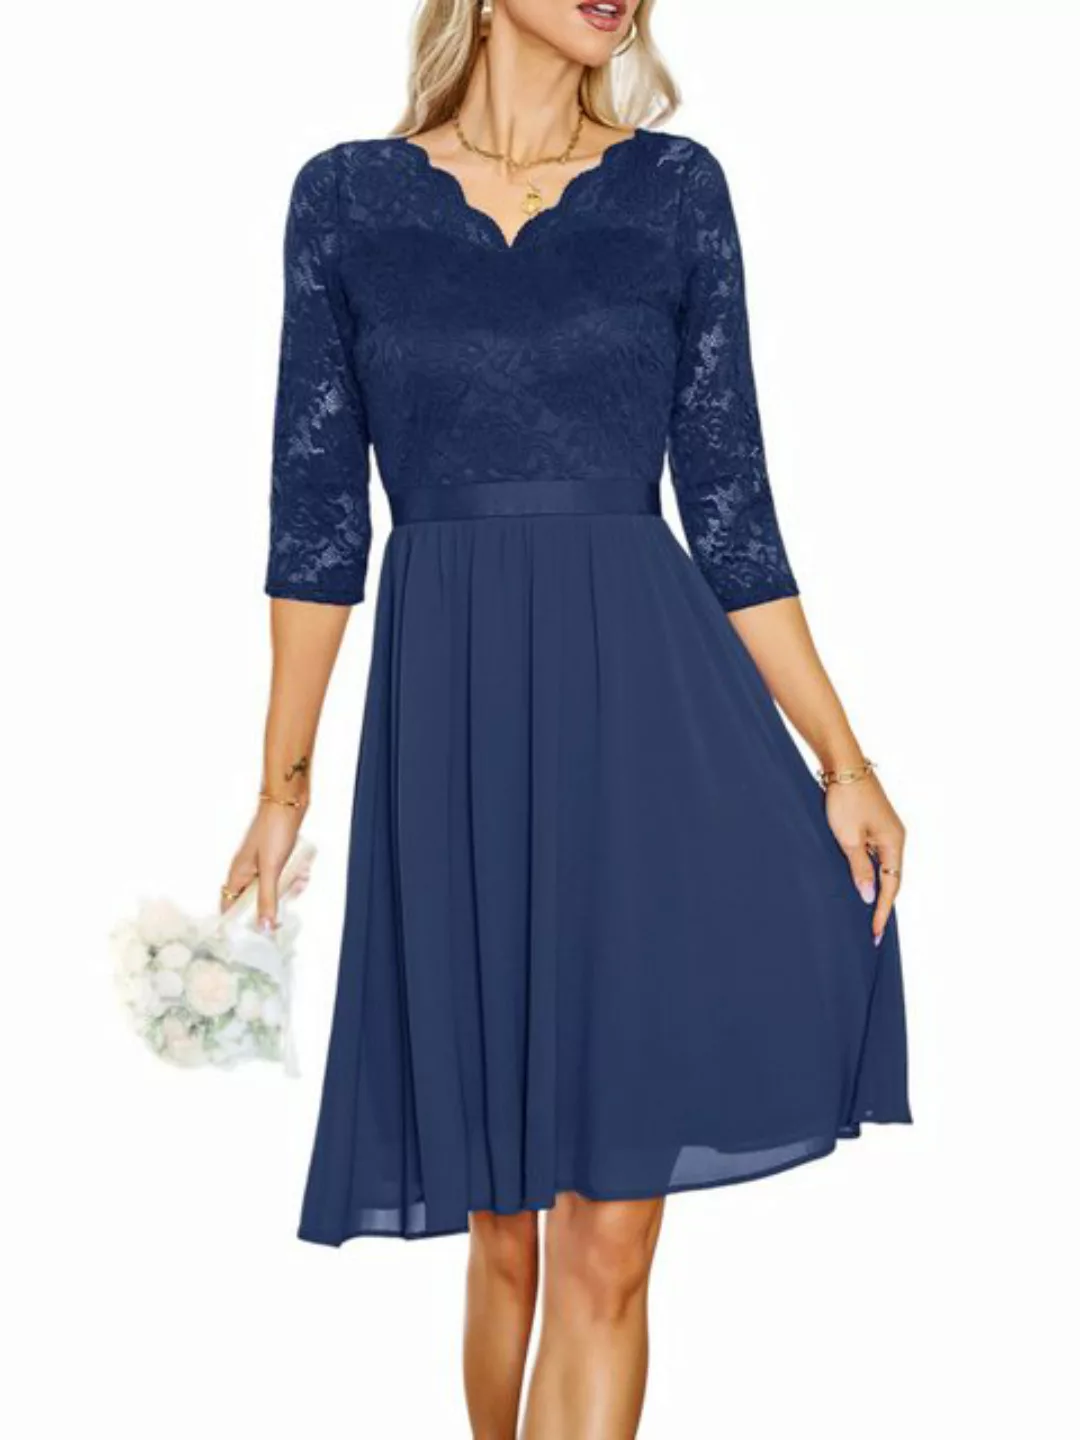 DYMADE Cocktailkleid Damen Elegant A-Linien Abendkleid mit Spitzen 36-44 Gr günstig online kaufen